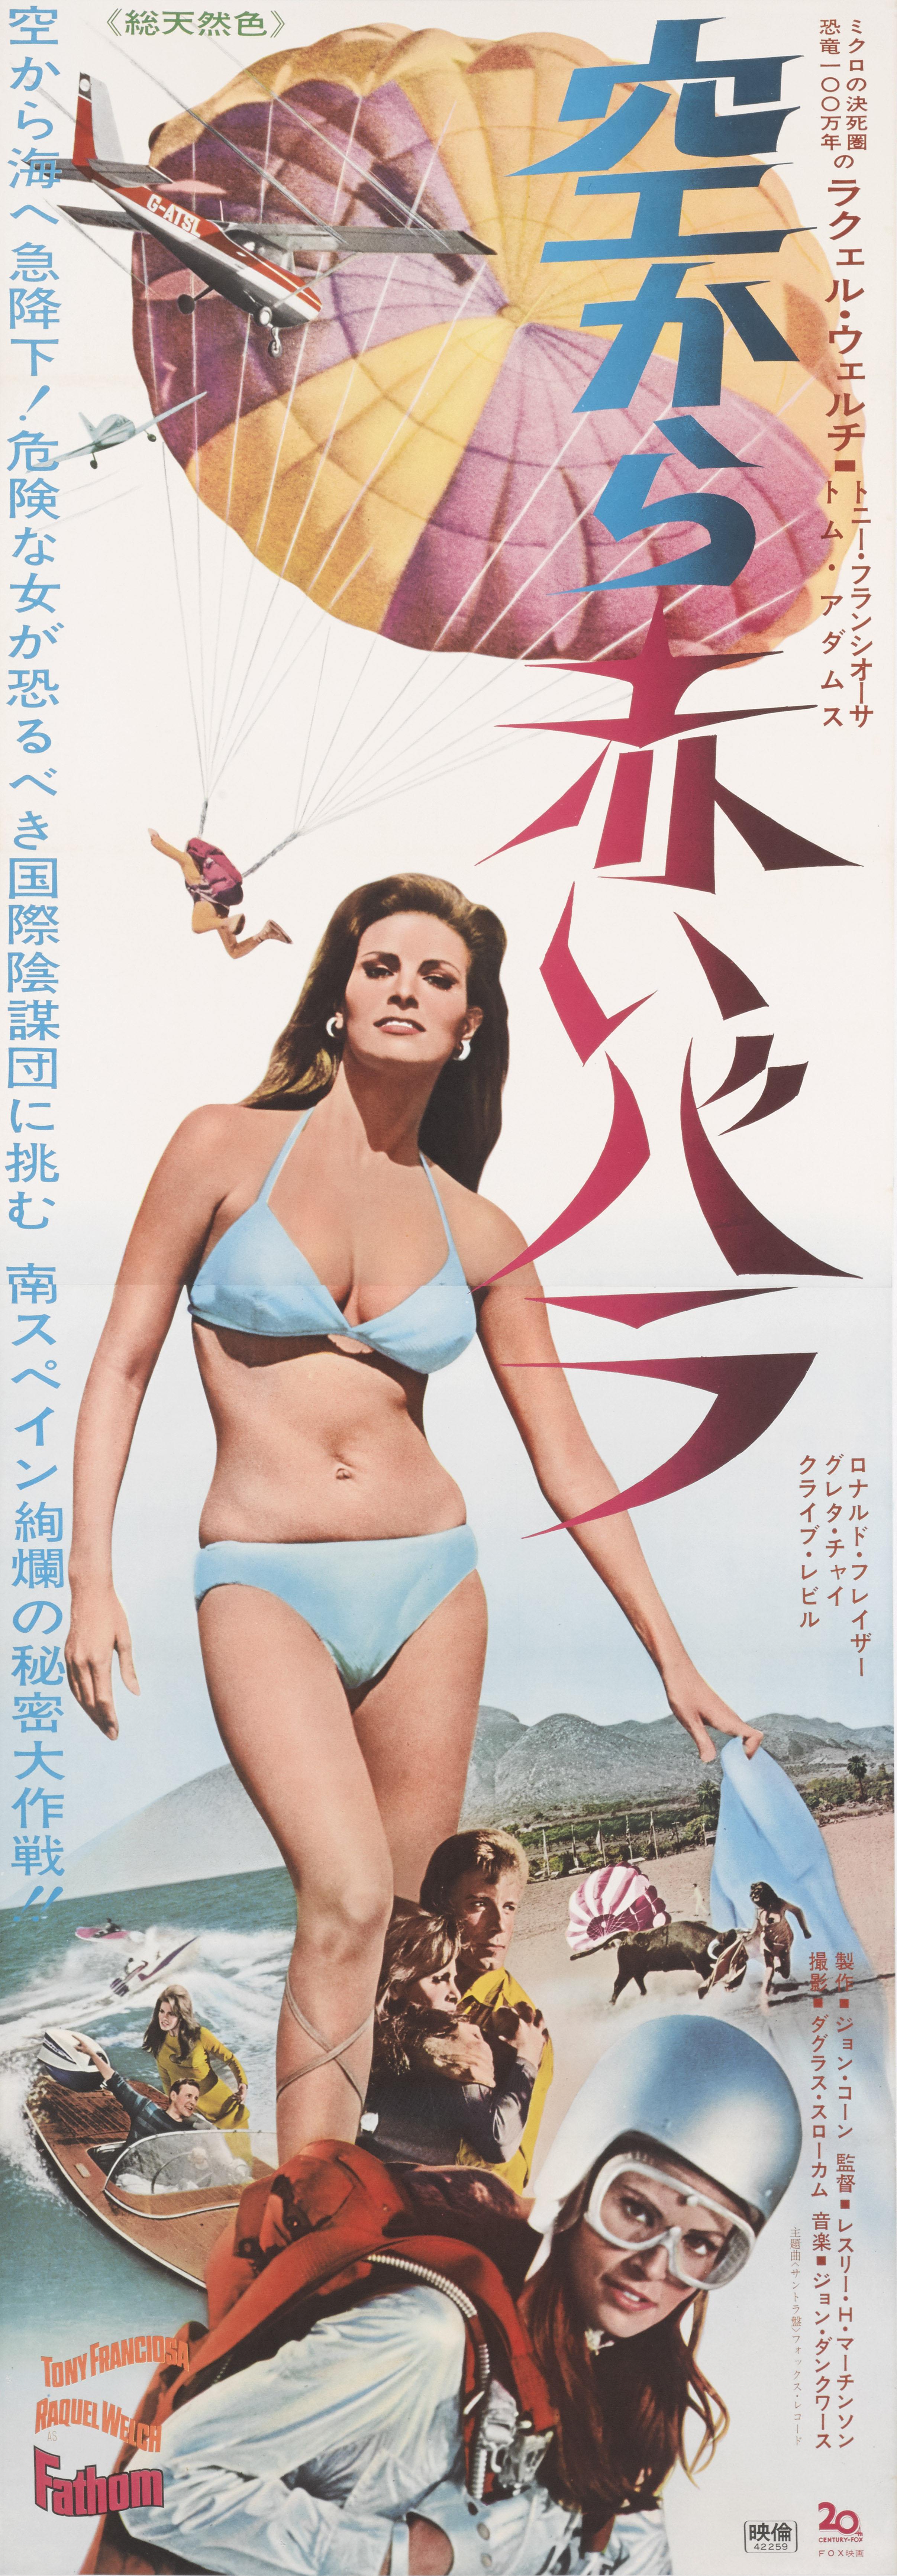 Originales japanisches Filmplakat für die Abenteuerkomödie von 1967 mit Raquel Welch und Anthony Franciosa in den Hauptrollen,
und Ronald Fraser. Dieses coole Kunstwerk wurde für die japanische Erstveröffentlichung des Films entworfen.
Das Plakat